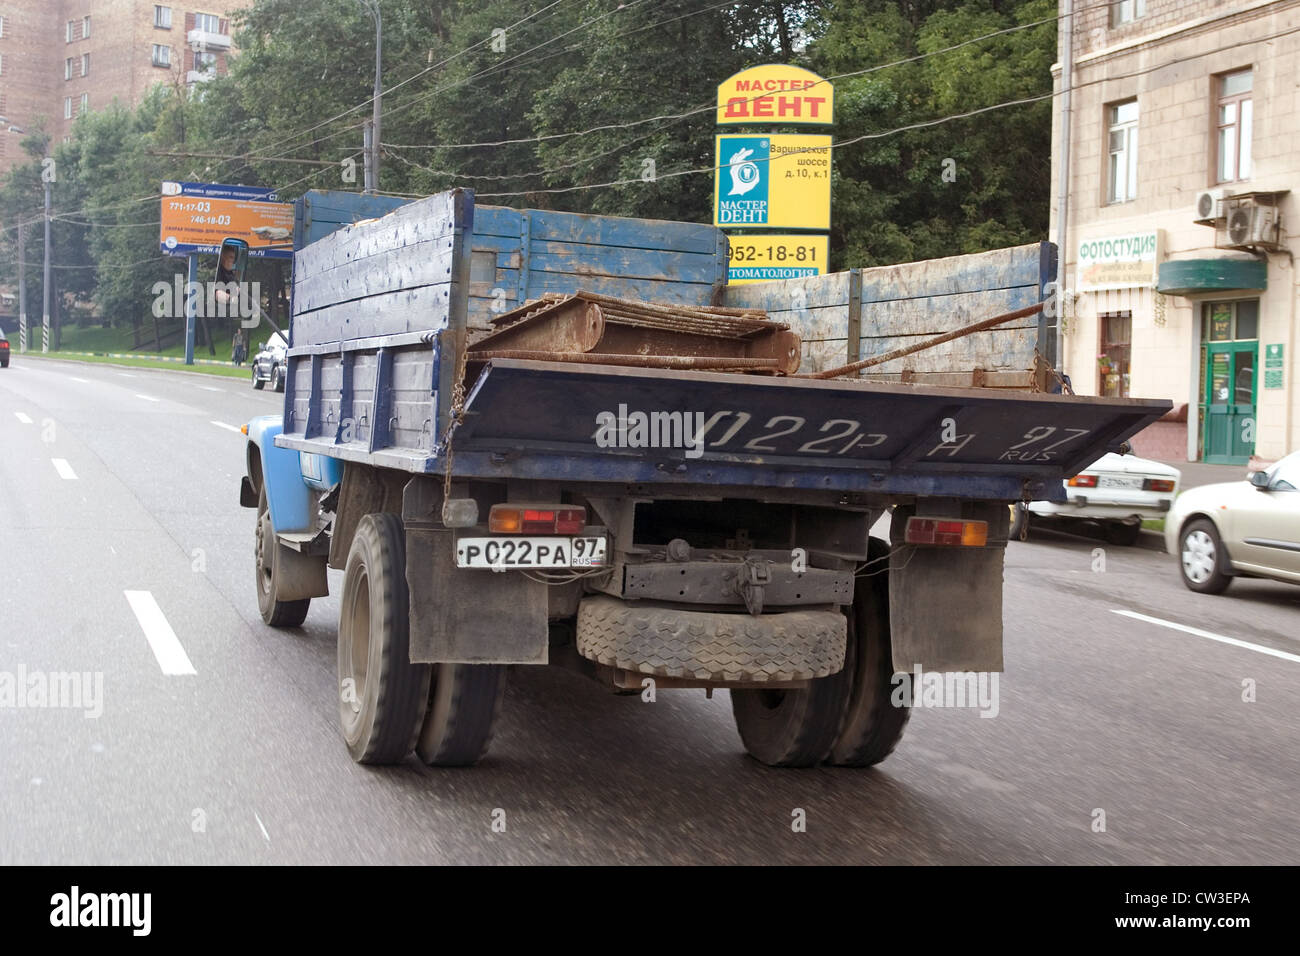 Moscou, un camion sur la route Banque D'Images